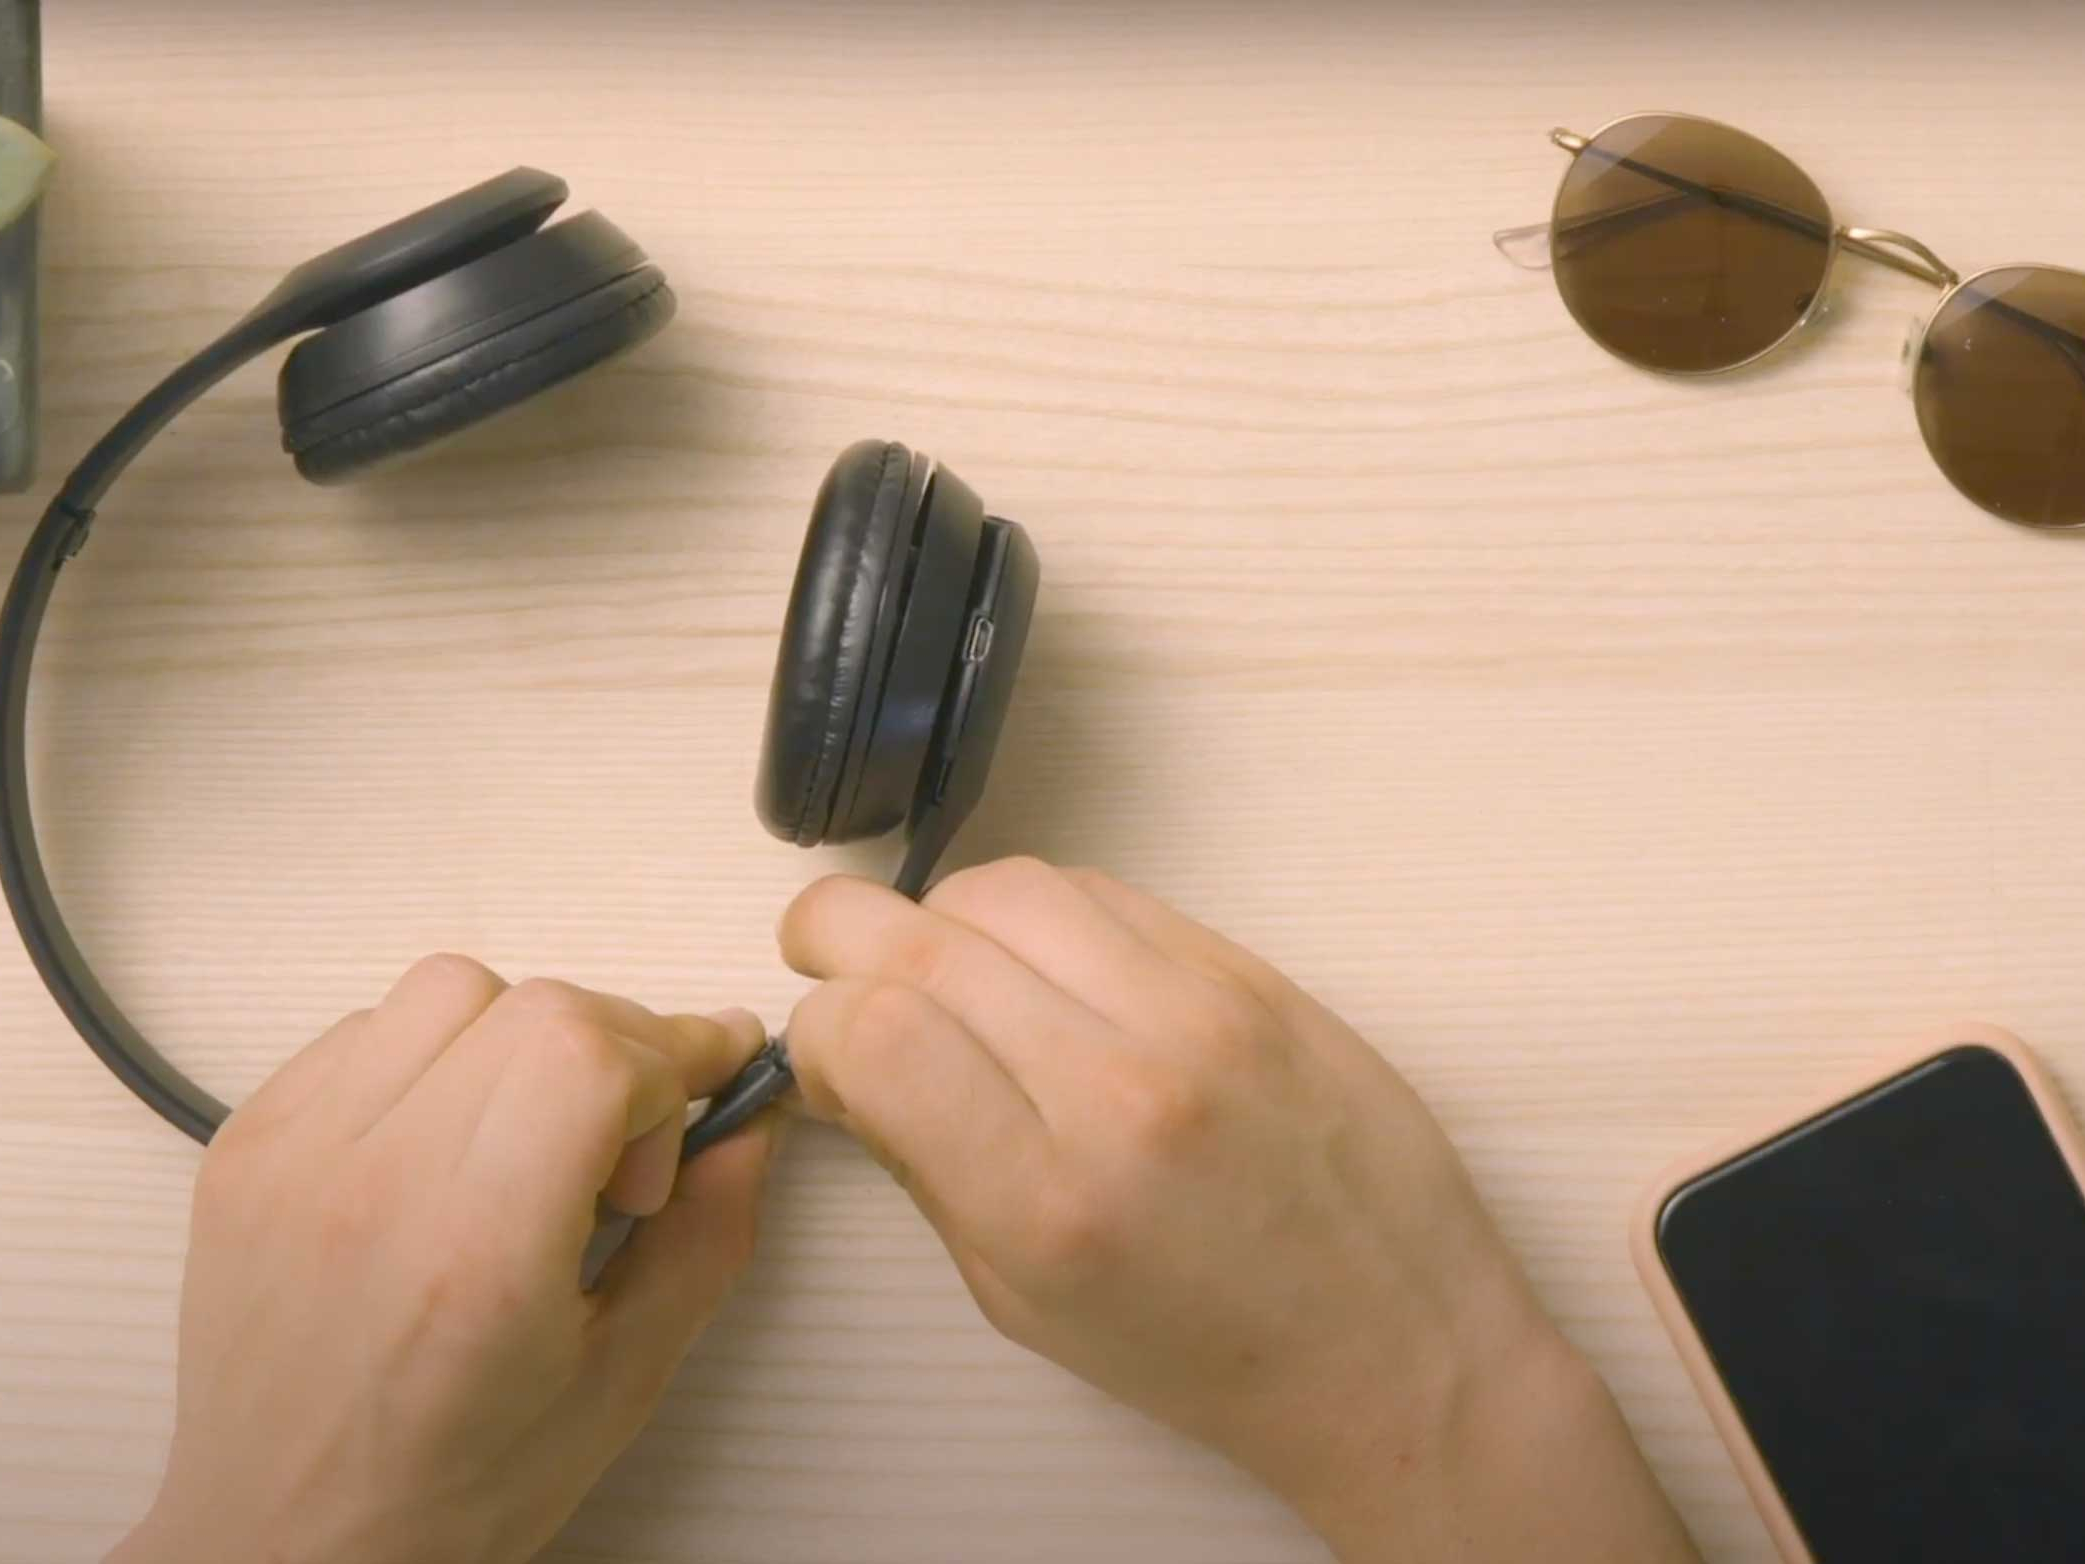 Bostik-DIY-Poland-tutorial-how-to-reapair-headphones-step-3